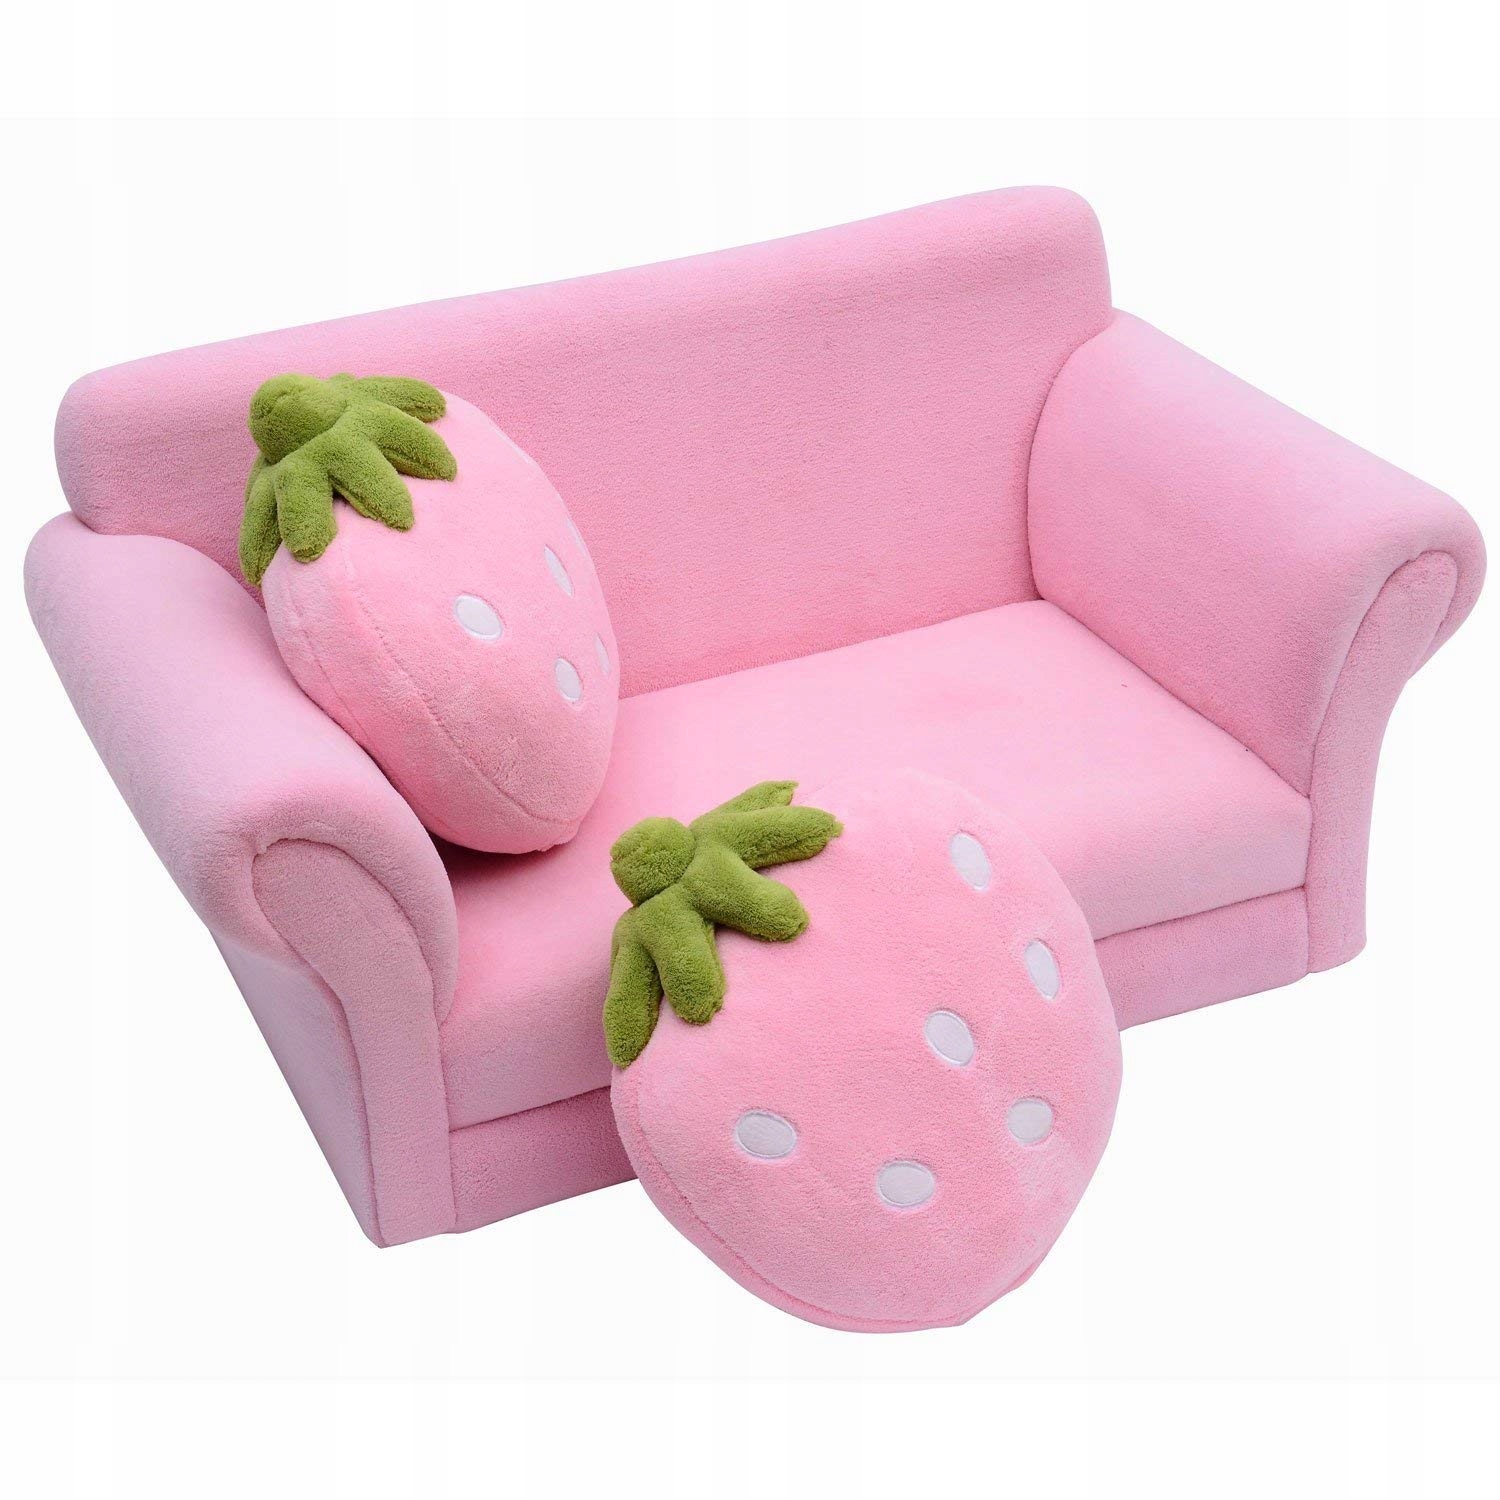 Детская мебель кресло. Диванчики для детей. Мягкий диванчик для малышей. Маленькие диваны для детей. Игрушечный диван для ребенка.